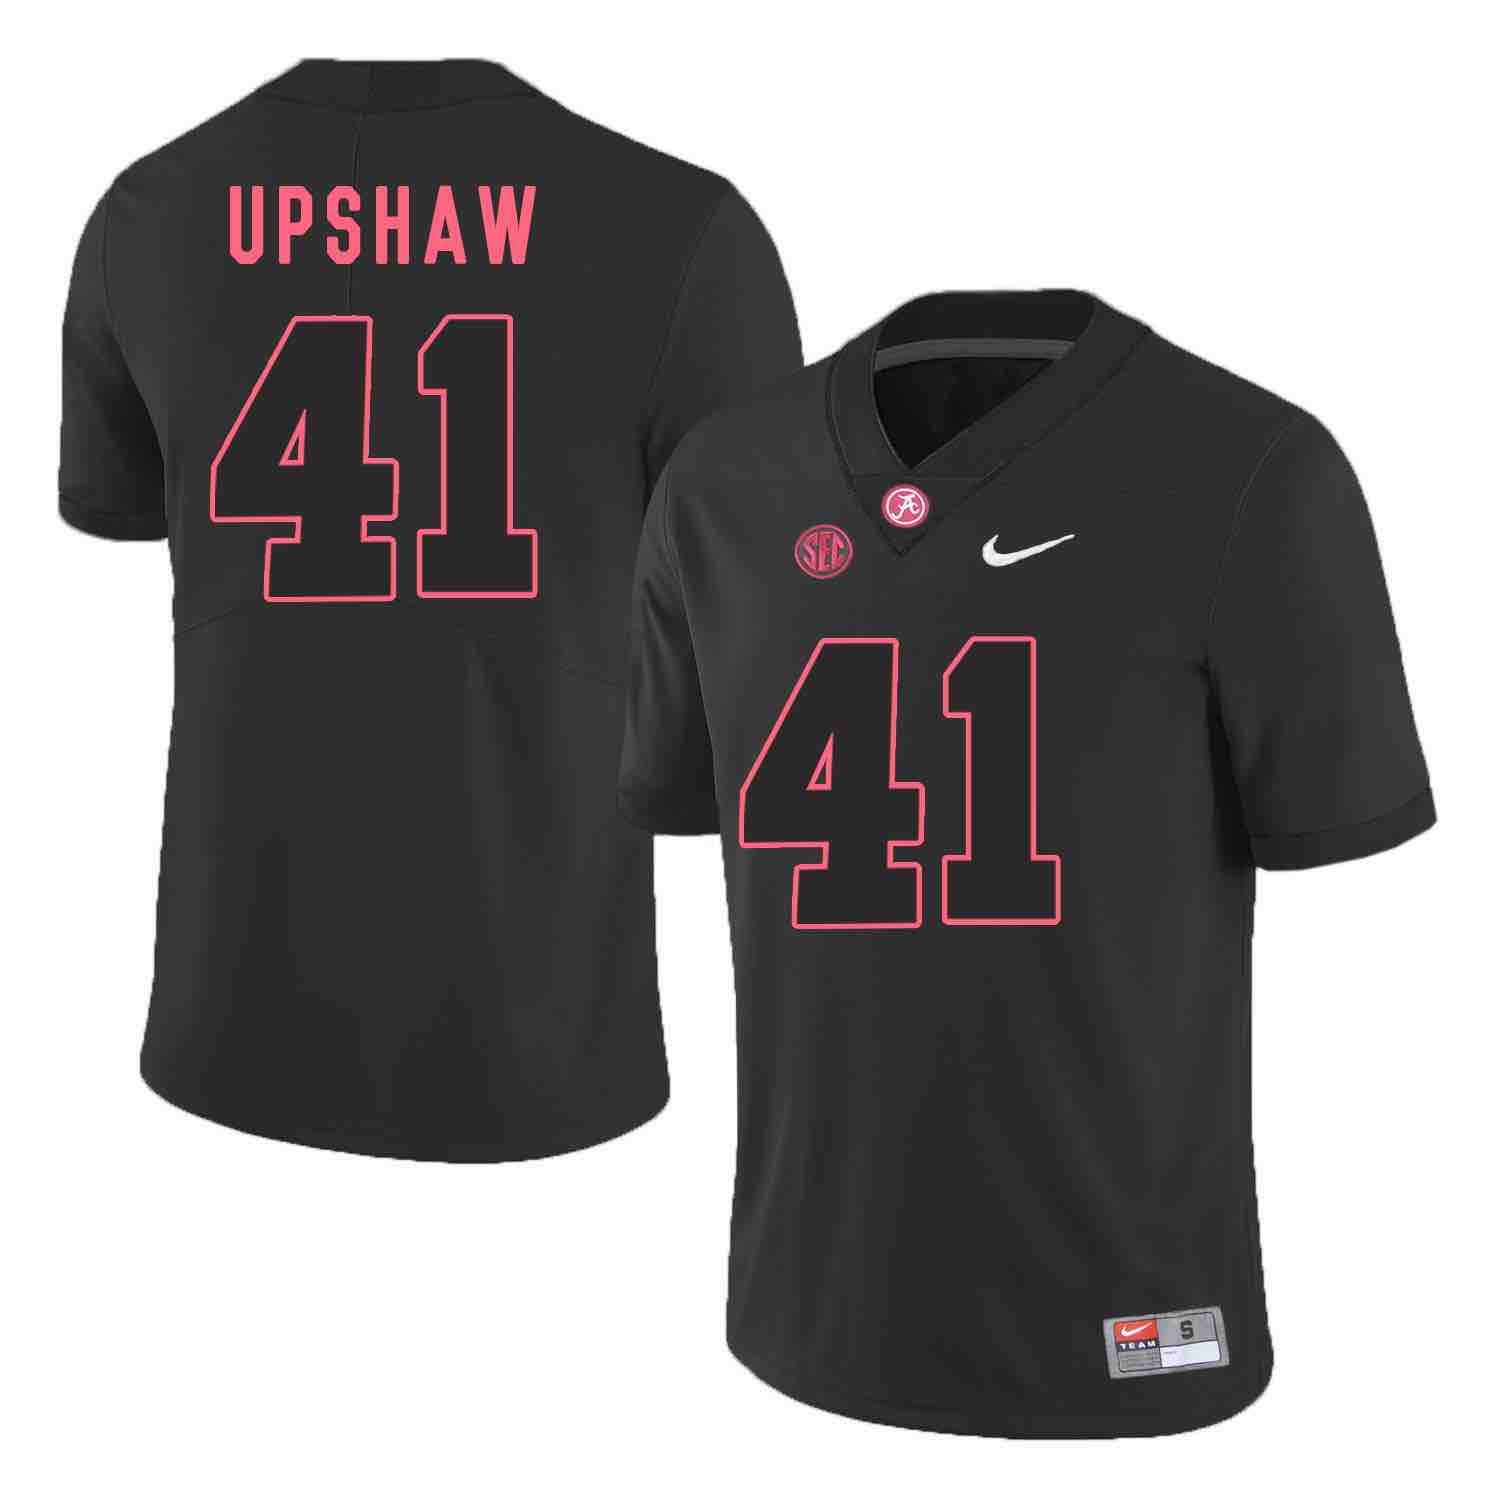 NCAA Alabama Crimson Tide #41 Upshaw Black Shawdow Football Jersey